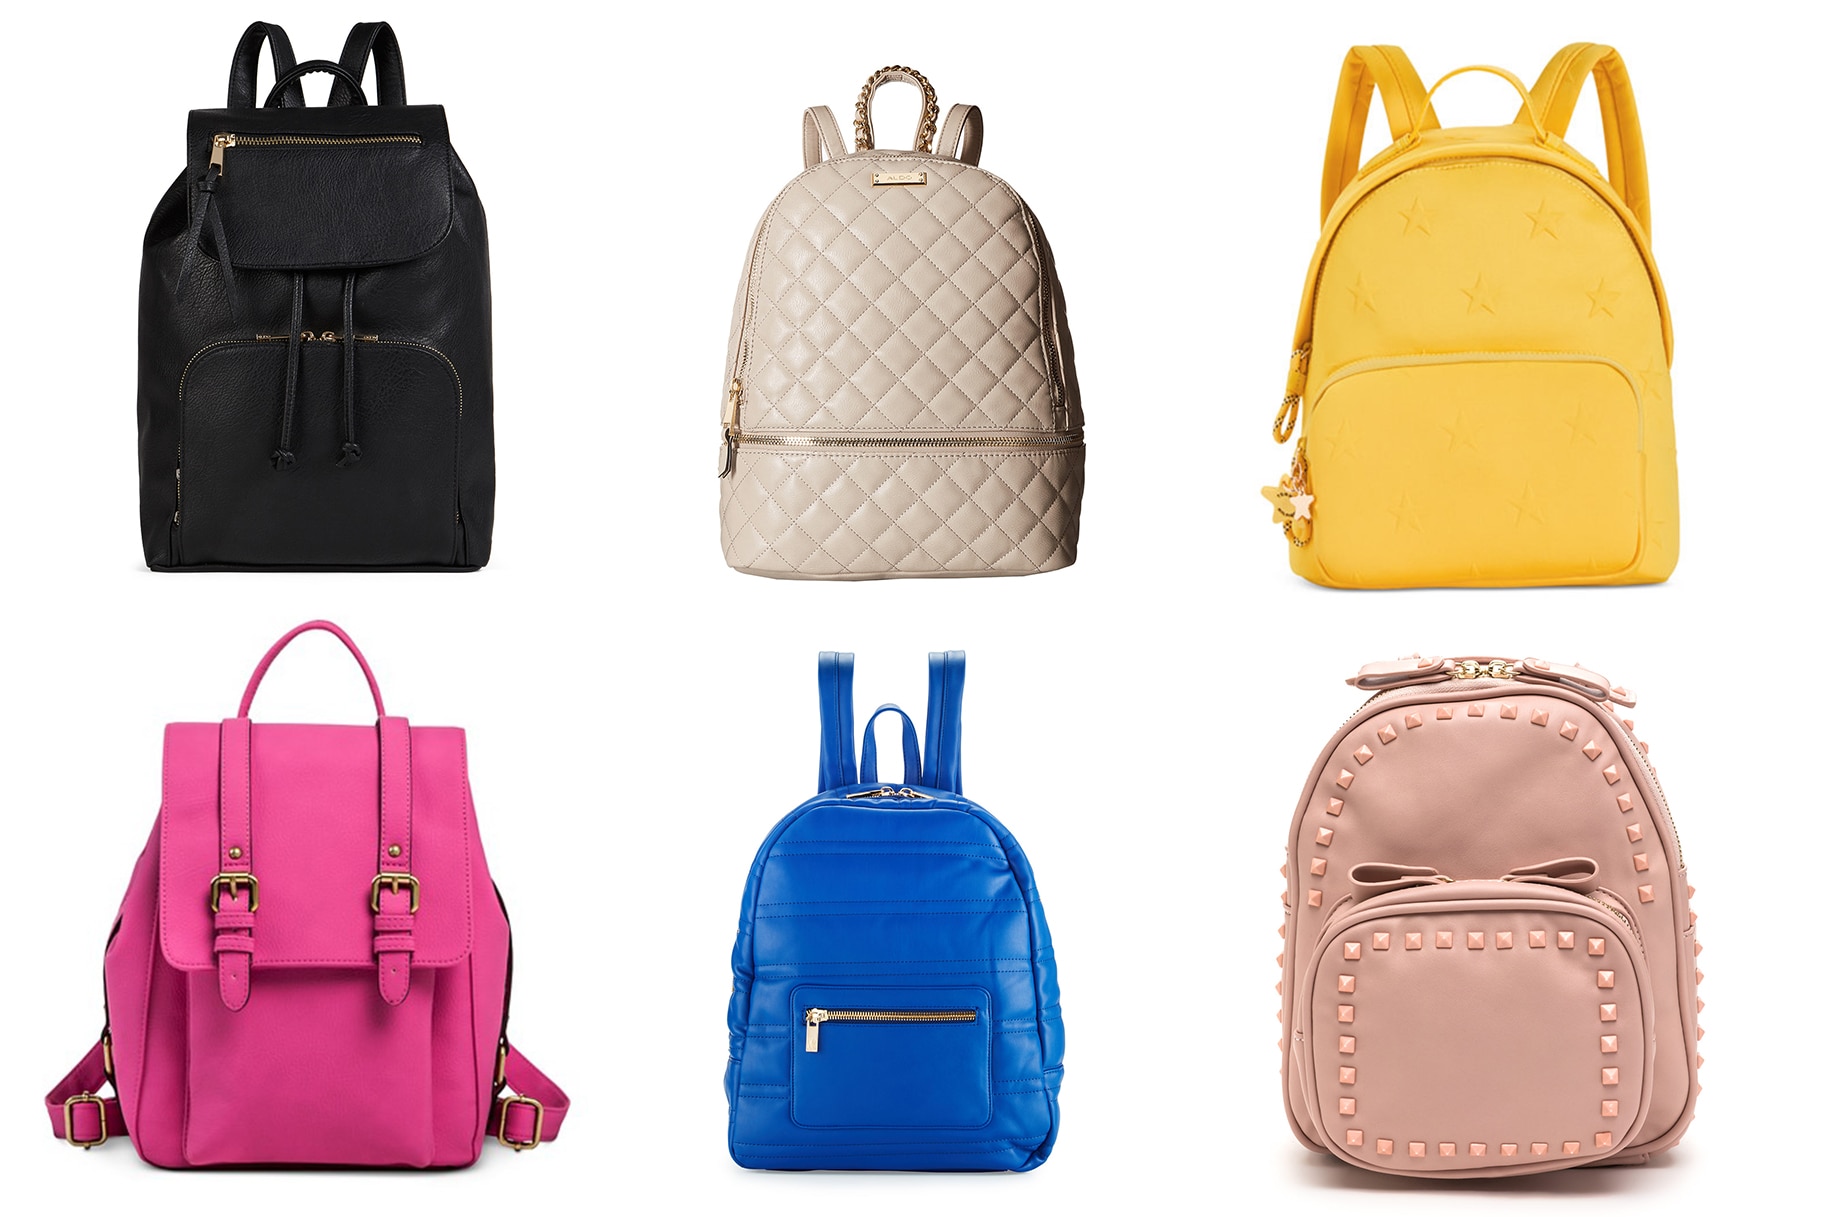 15 Stylish Backpacks Under $50 | Style 